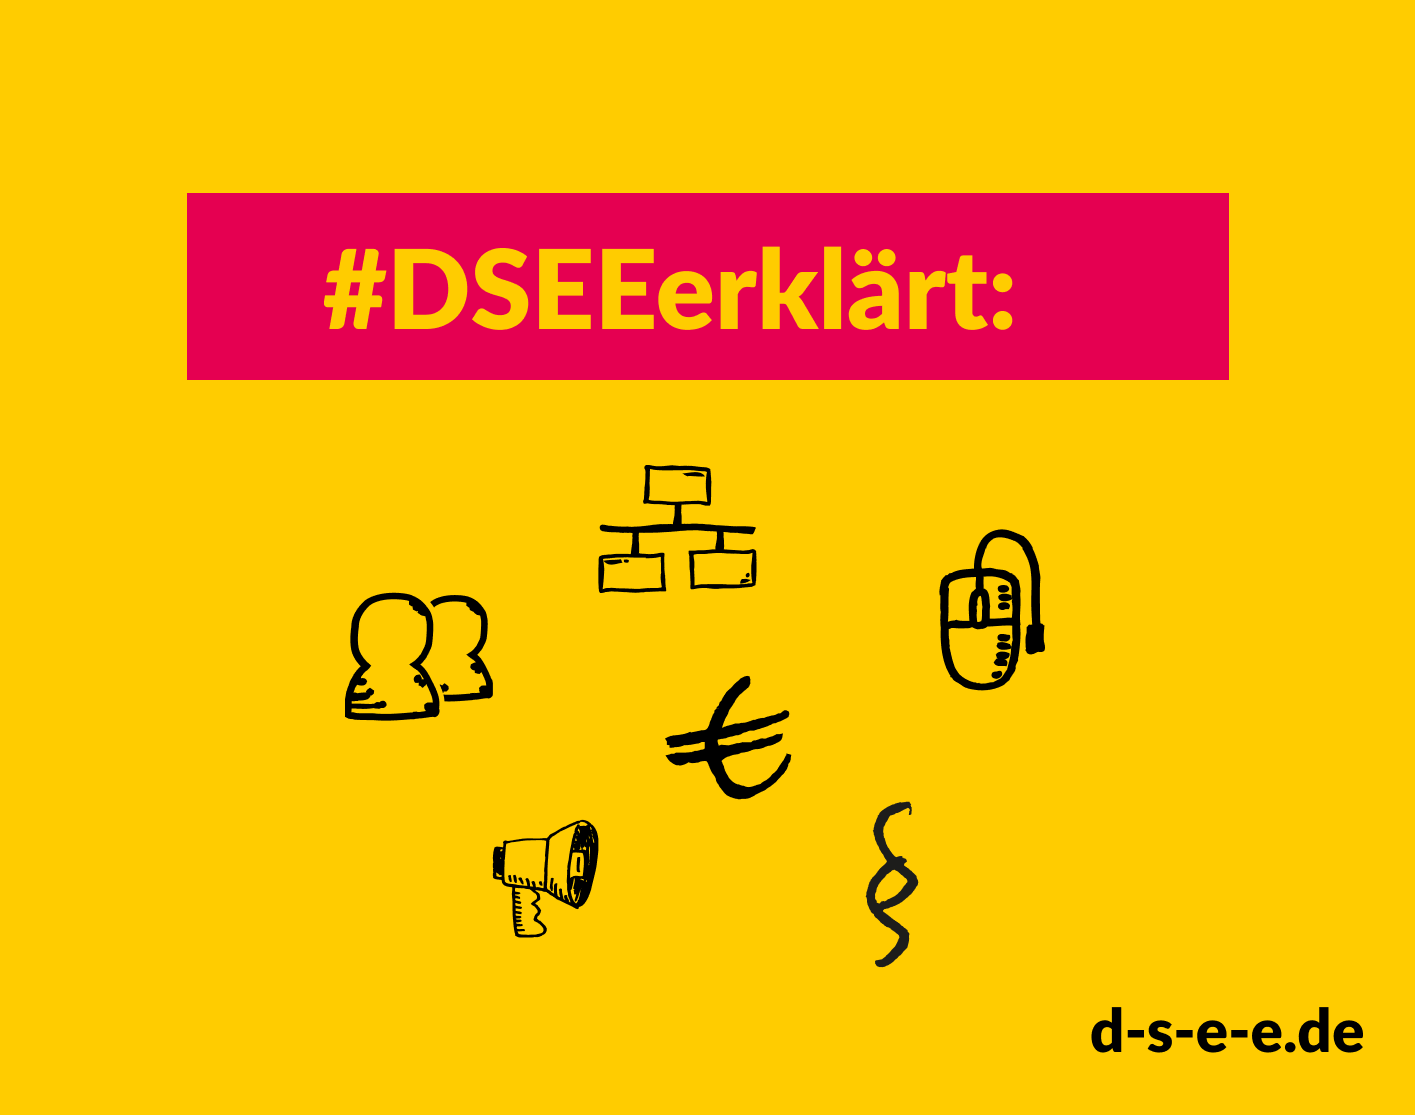 Grafik mit gezeichneten Menschenfiguren, das Eurozeichen, das Organigramm-Zeichen, das Paragraphenzeichen, eine Computermaus und ein Megafon. Text: #DSEEinformiert. d-s-e-e.de